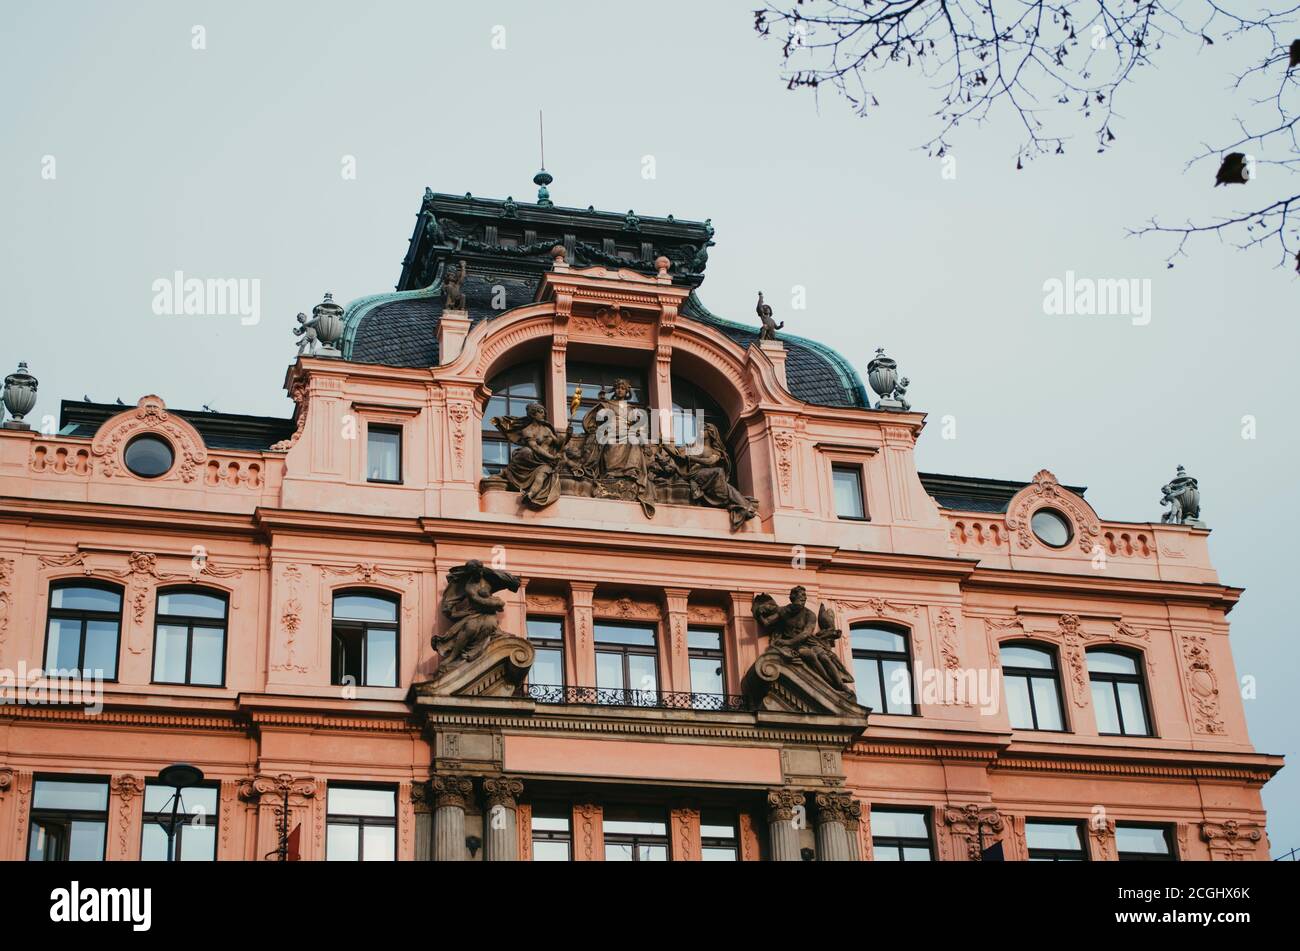 Prague, Czechia - EIN schrulliges, pinkfarbenes Gebäude in der Nähe des Nationalmuseums und mit Engelsstatuen im Eingang. Stockfoto